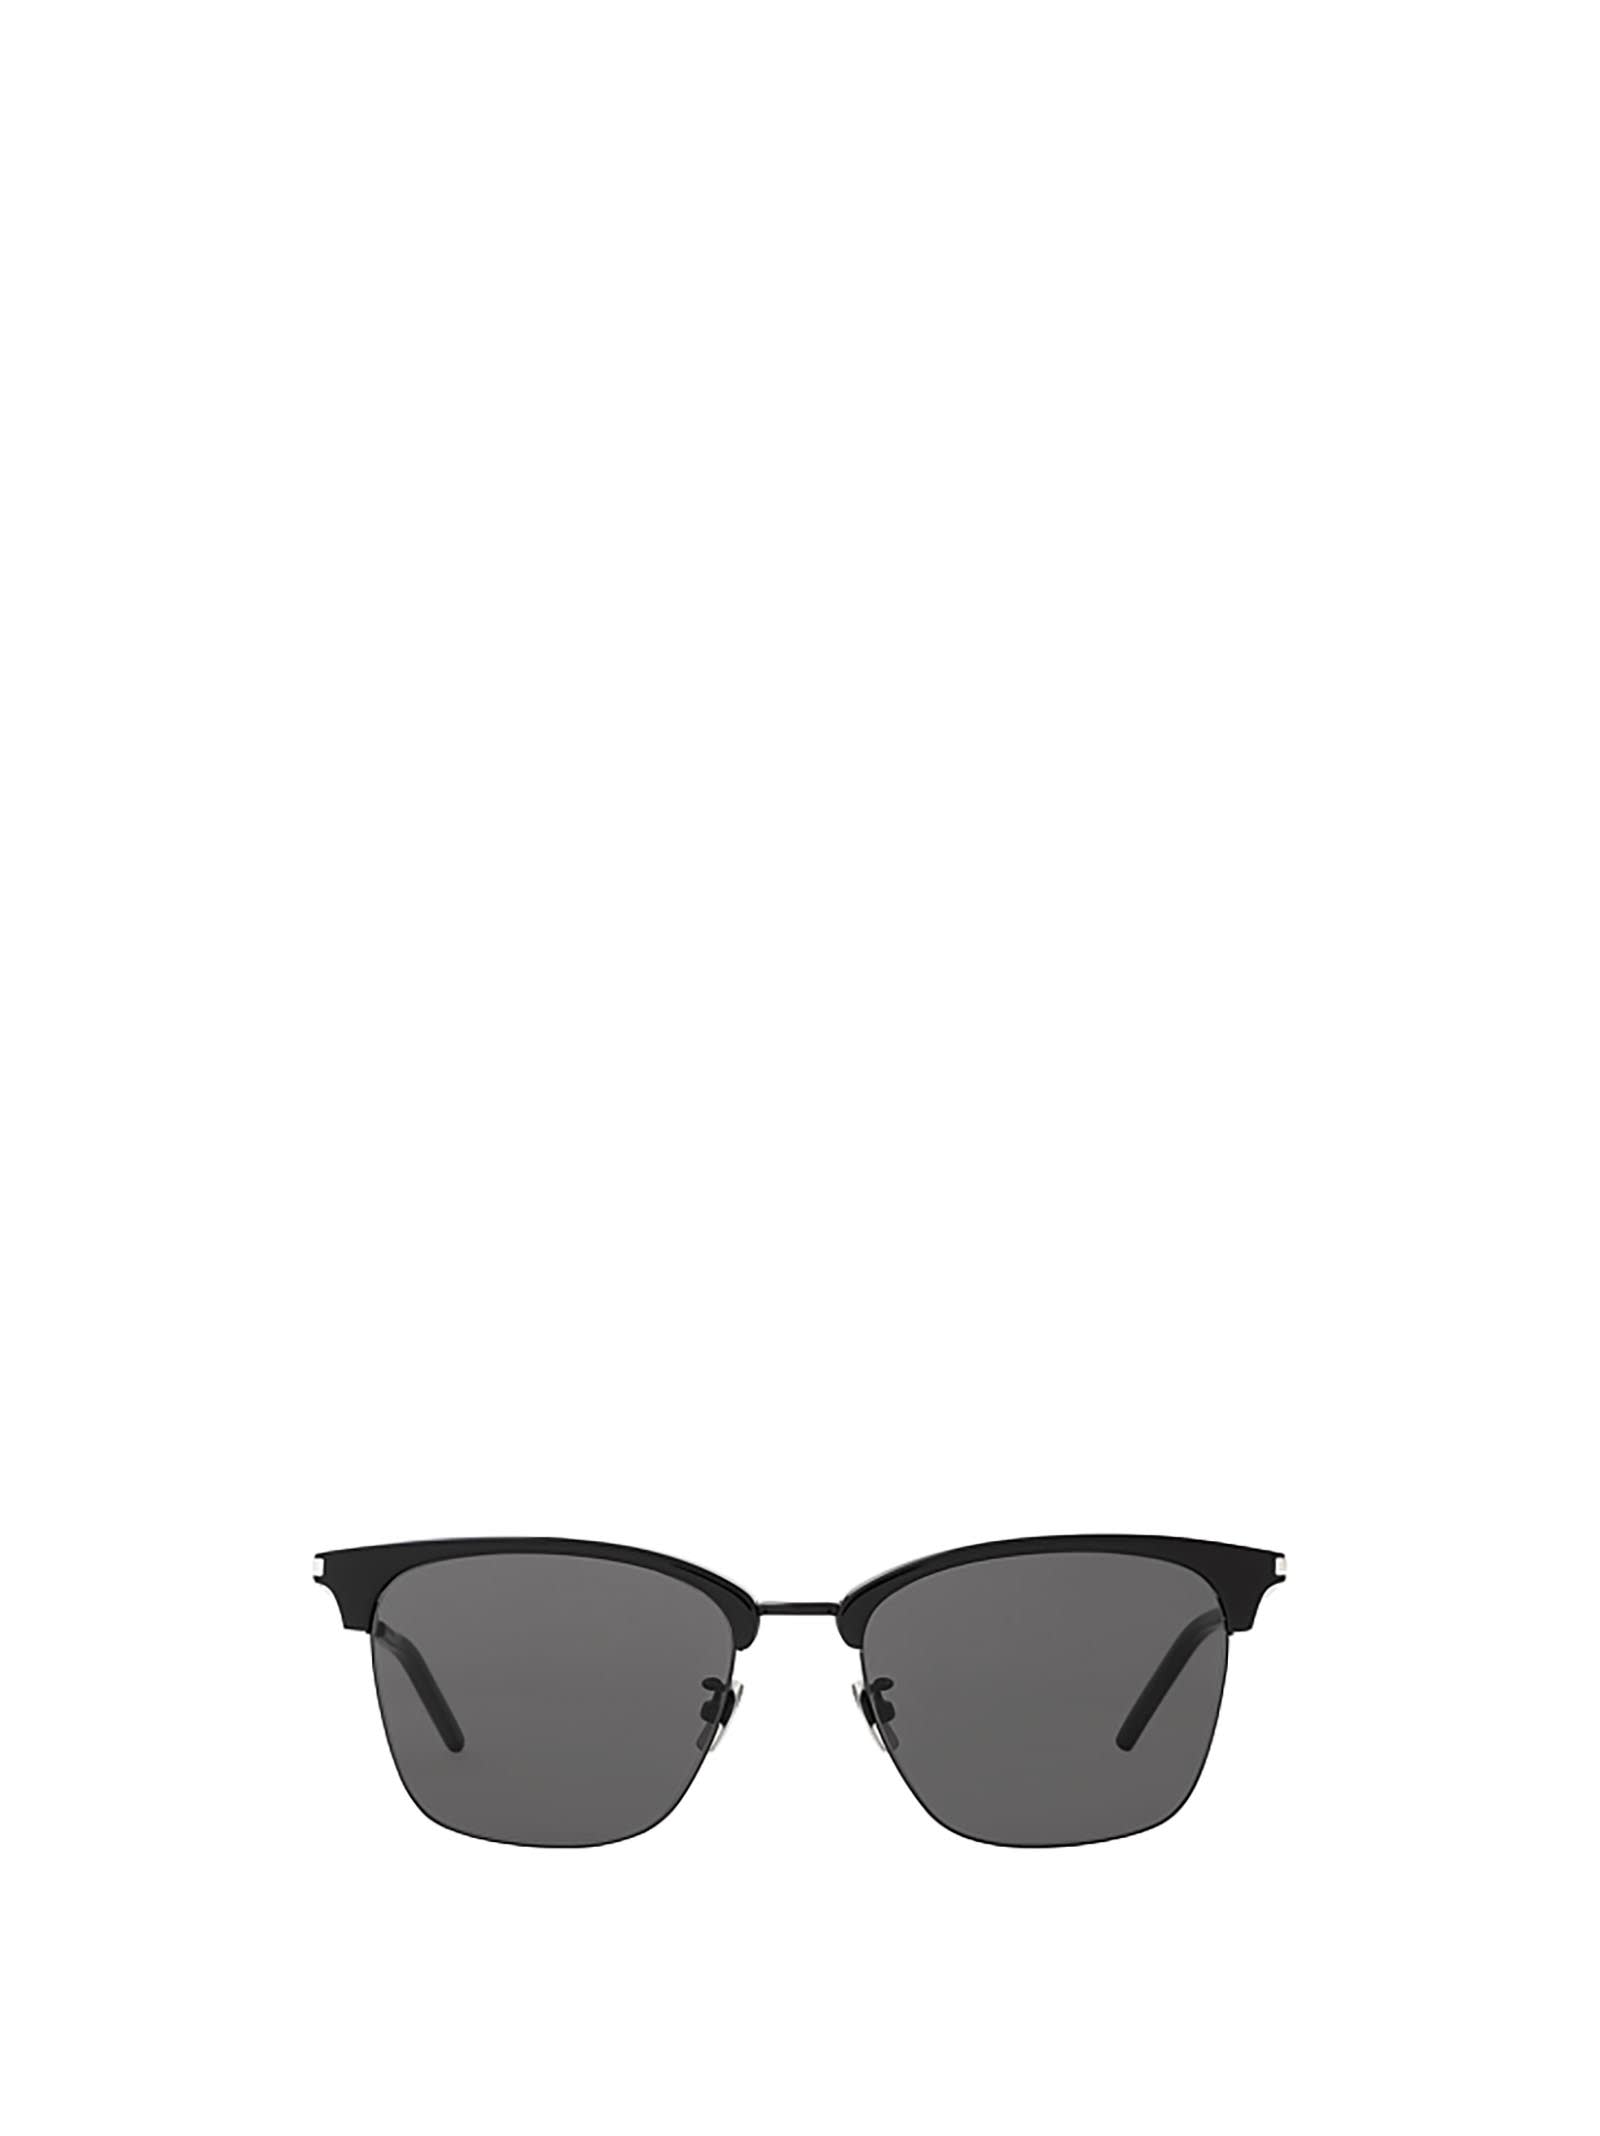 Saint Laurent Eyewear Saint Laurent Sl 340 Black Sunglasses